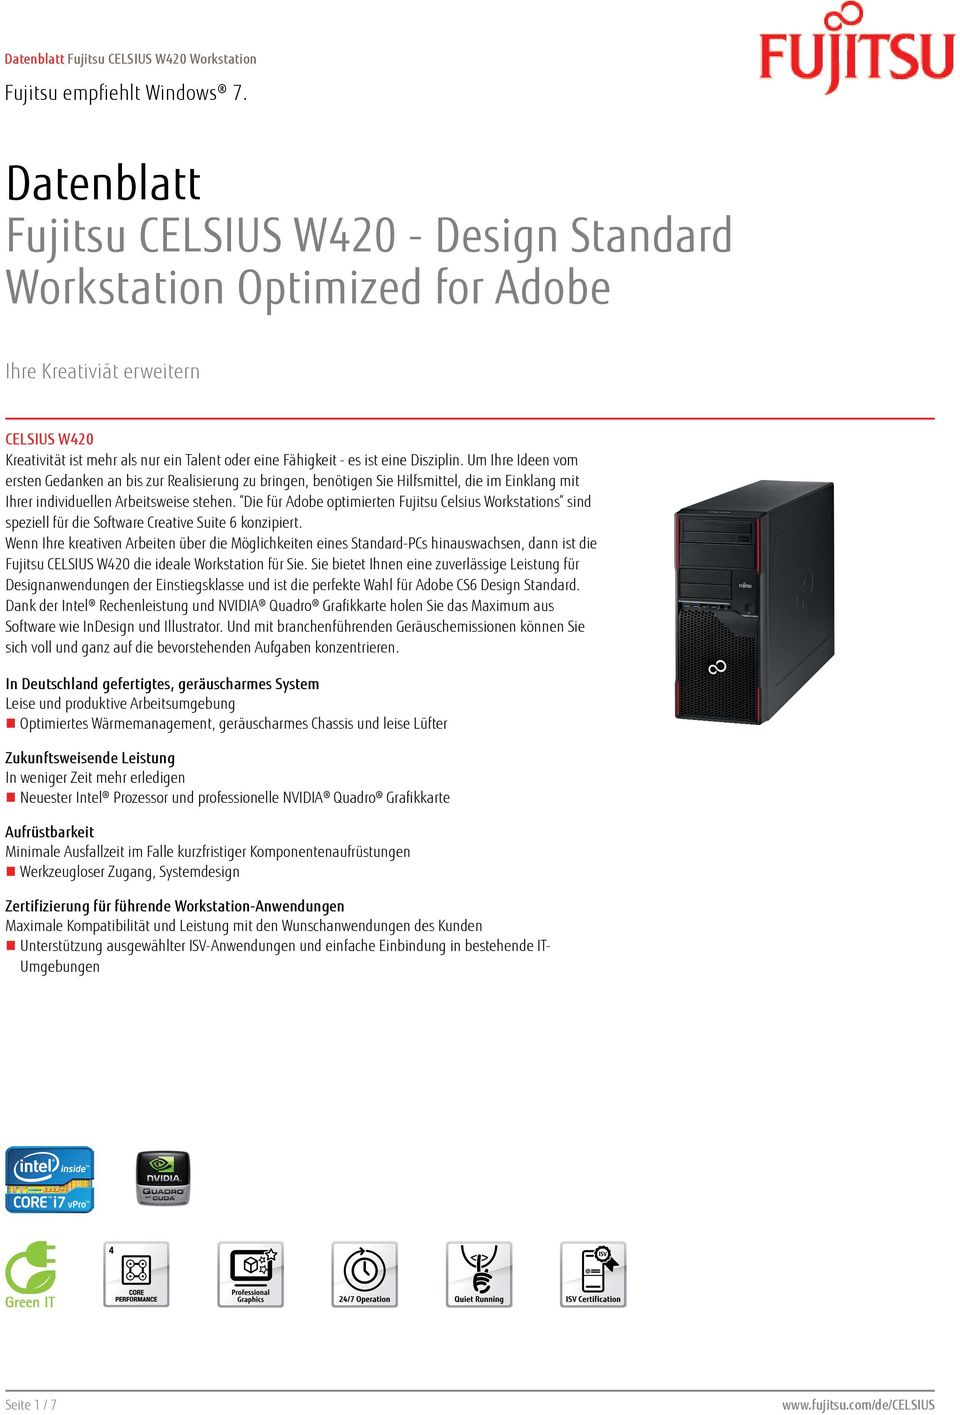 Die für Adobe optimierten Fujitsu Celsius Workstations sind speziell für die Software Creative Suite 6 konzipiert.